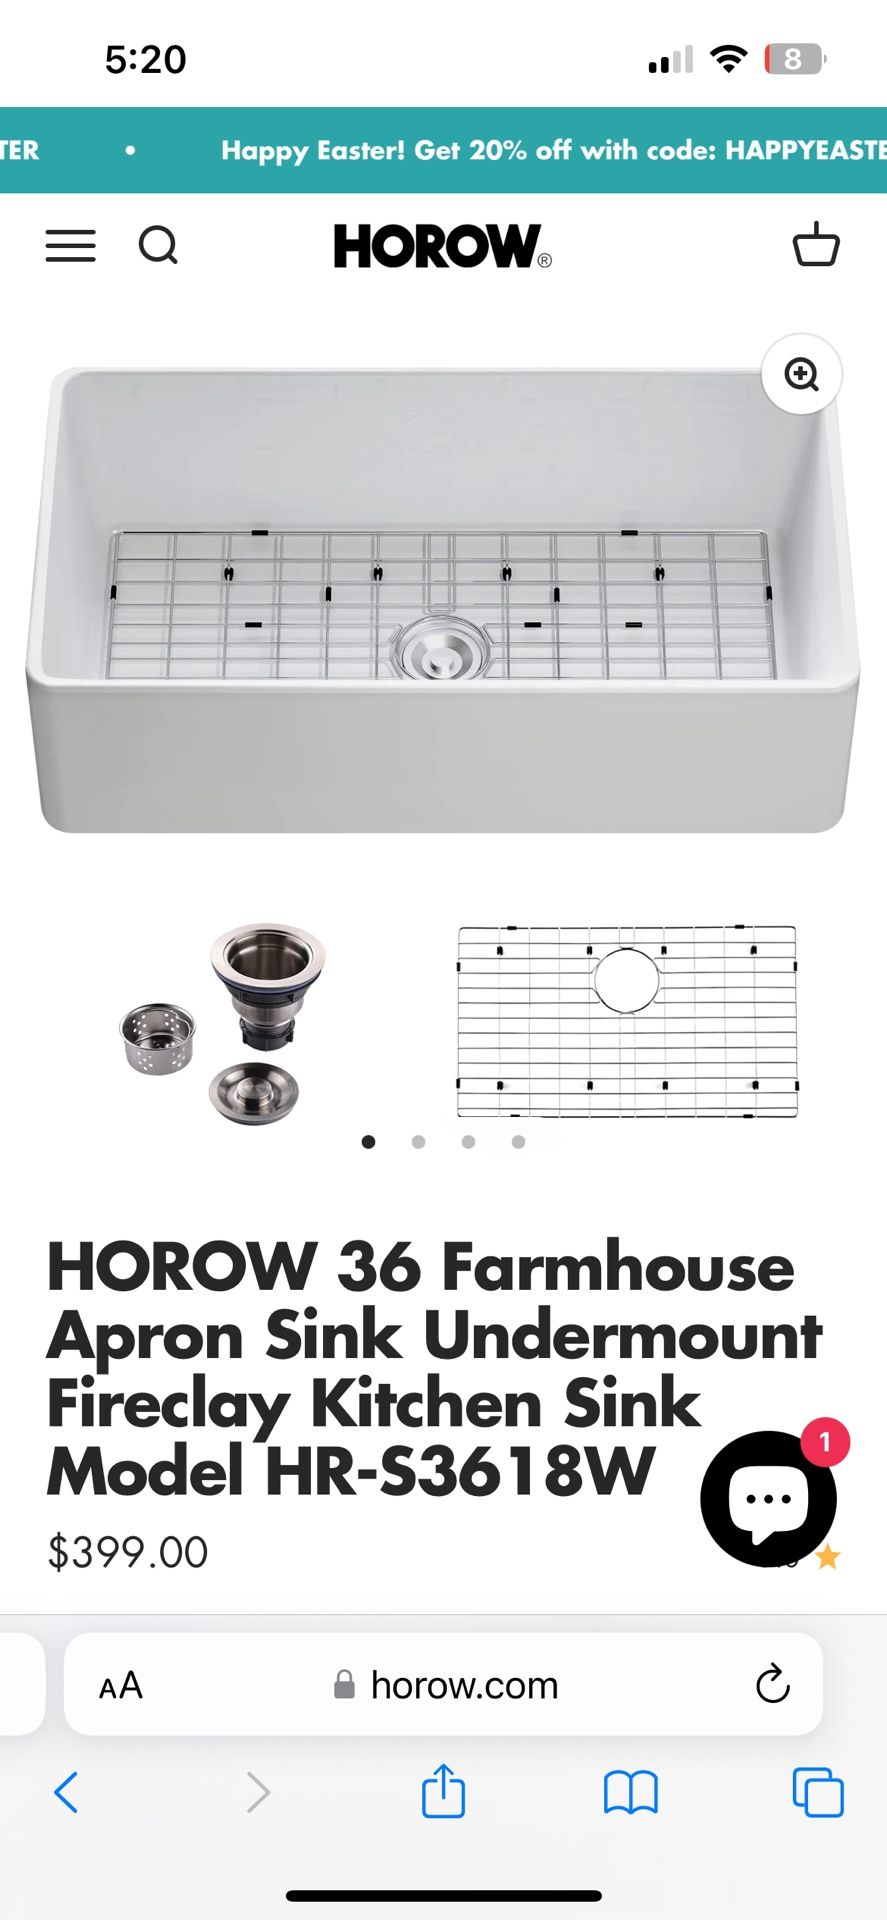 HOROW 36 farmhouse, sink, Undermount fire clay kitchen sink worth 440